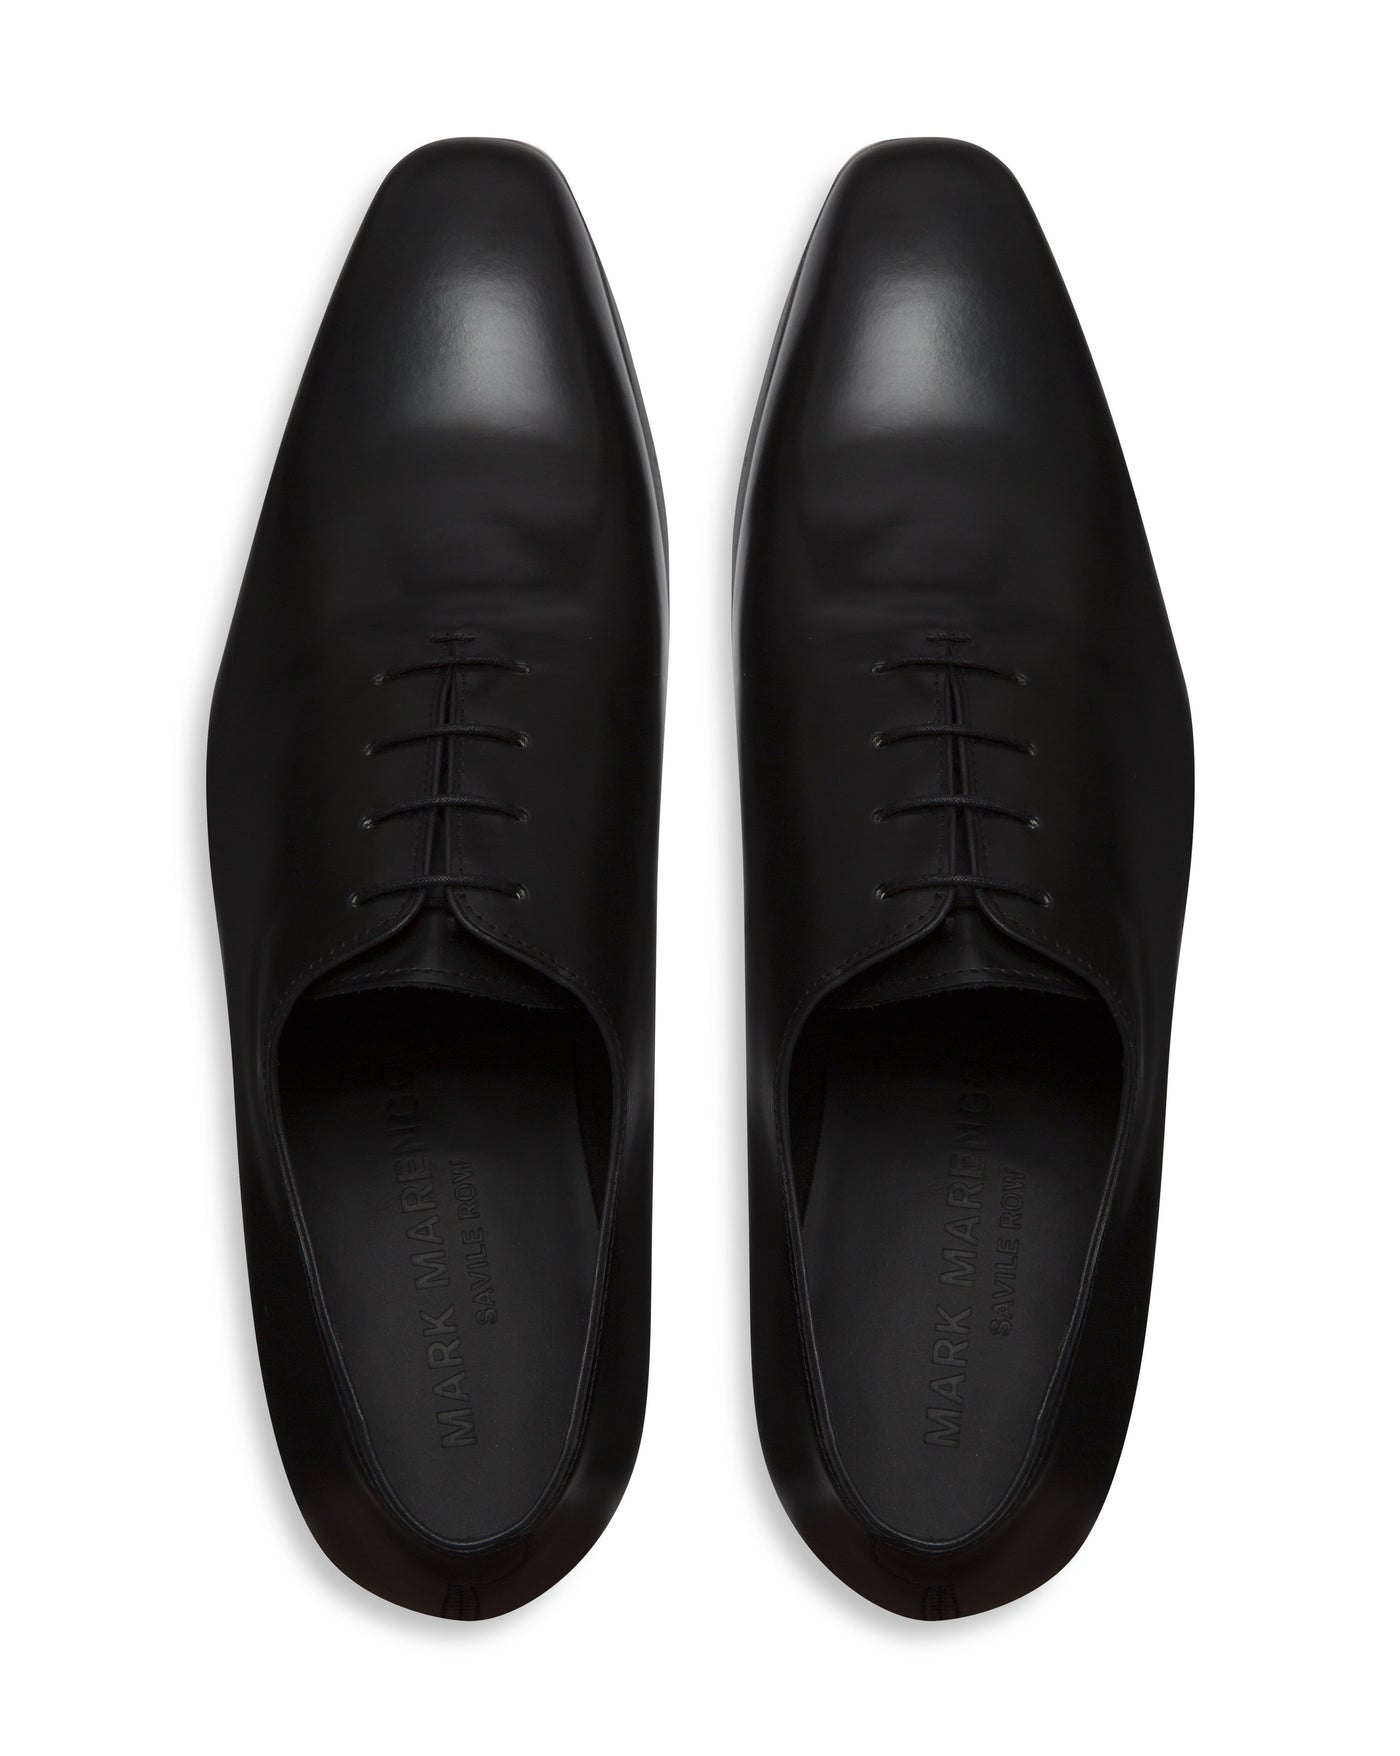 Chaussures Wholecut noires cousues à la main